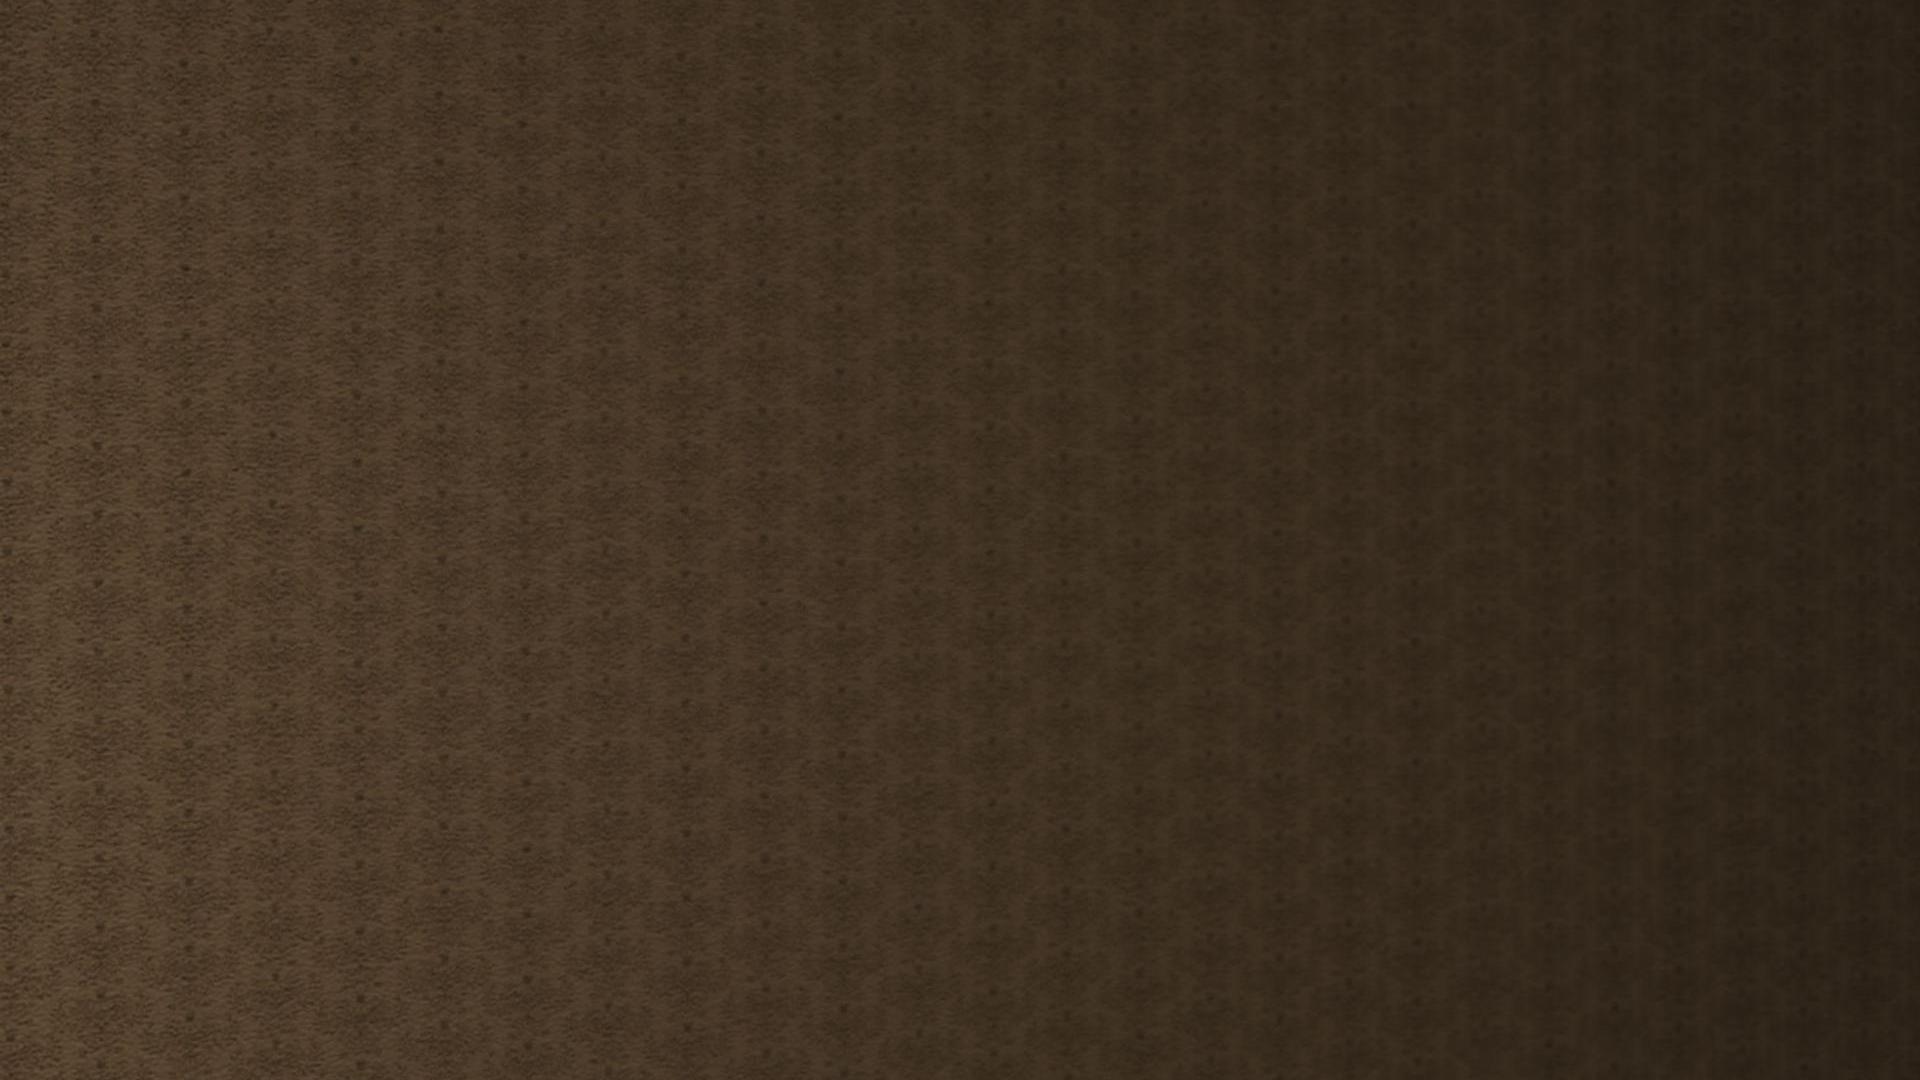 19201080 brown pattern wallpaper a brown pattern desktop wallpaper 1920x1080